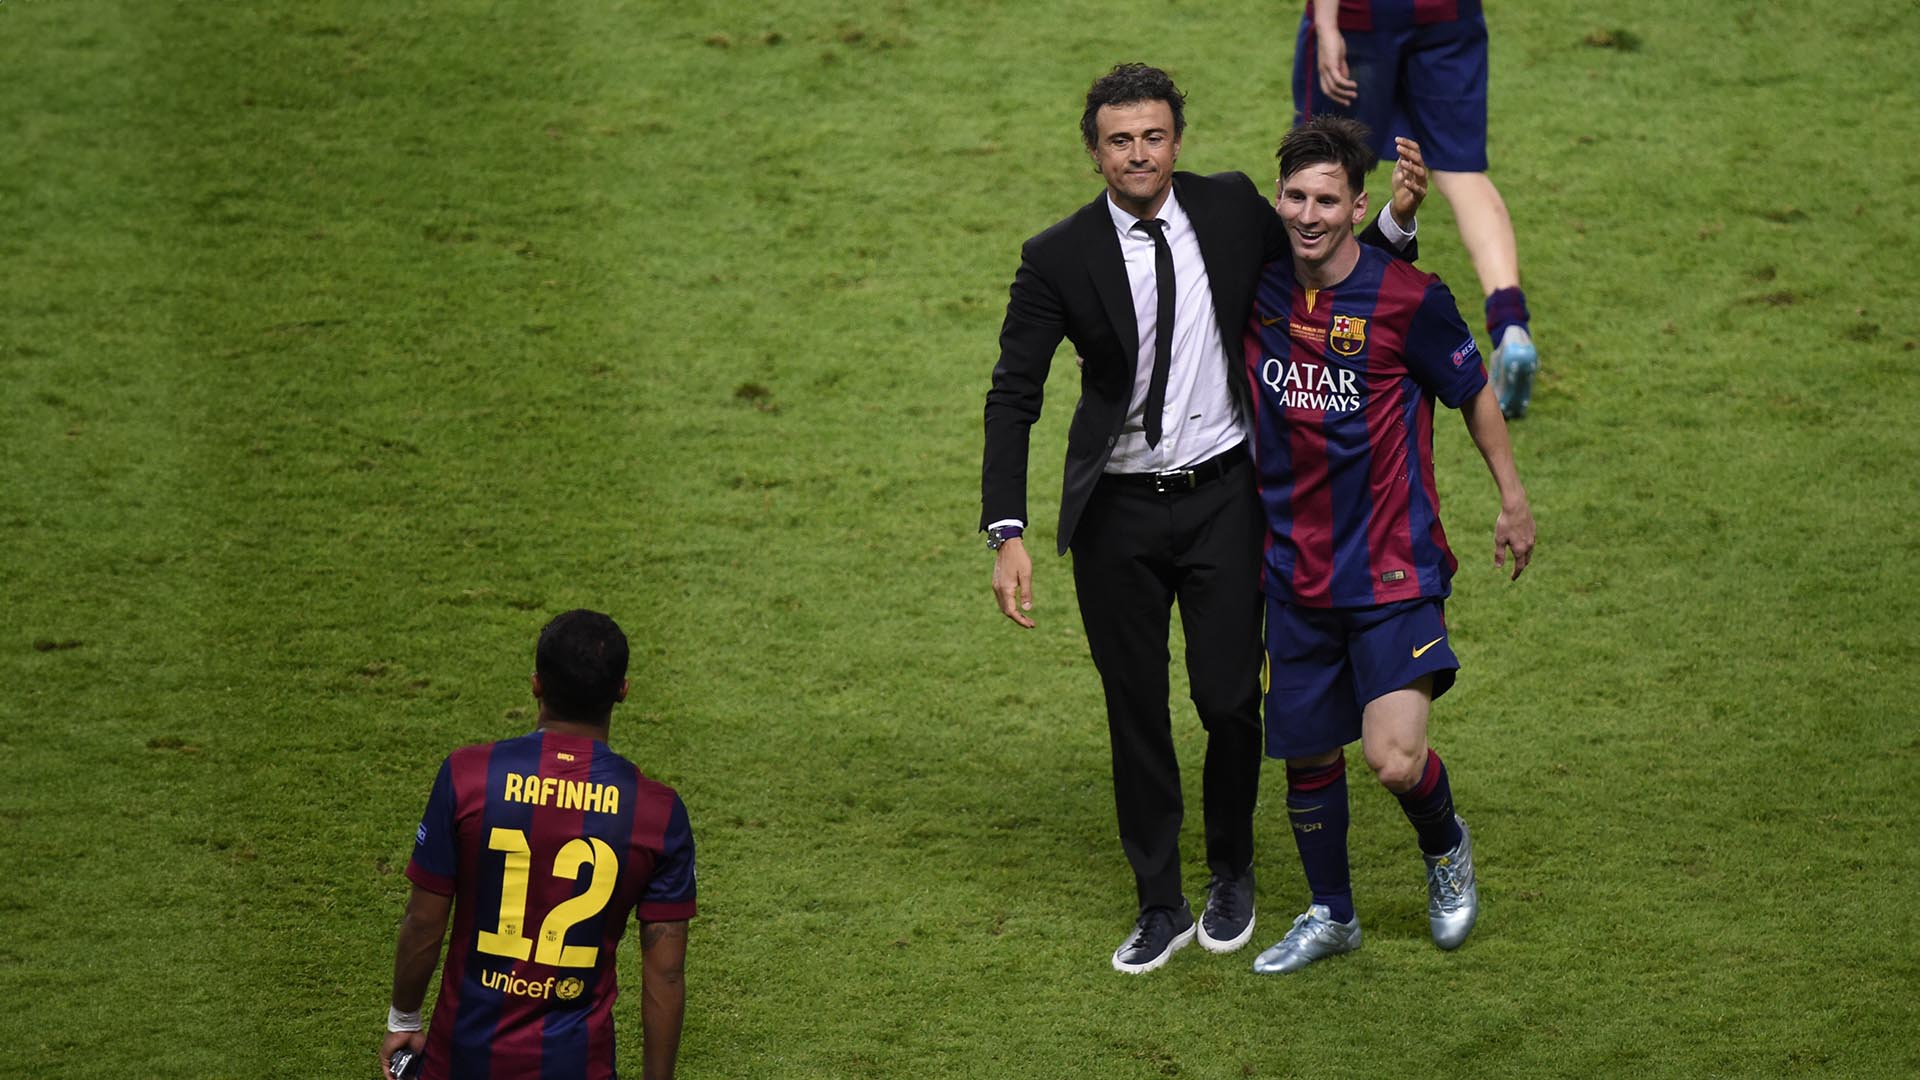 El 21 de mayo de 2014, el Barça anunció el fichaje de Luis Enrique como entrenador del primer equipo. Con la osada frase “el líder soy yo”, en un club donde Messi era el rey, el asturiano marcó terreno en su primera rueda de prensa.